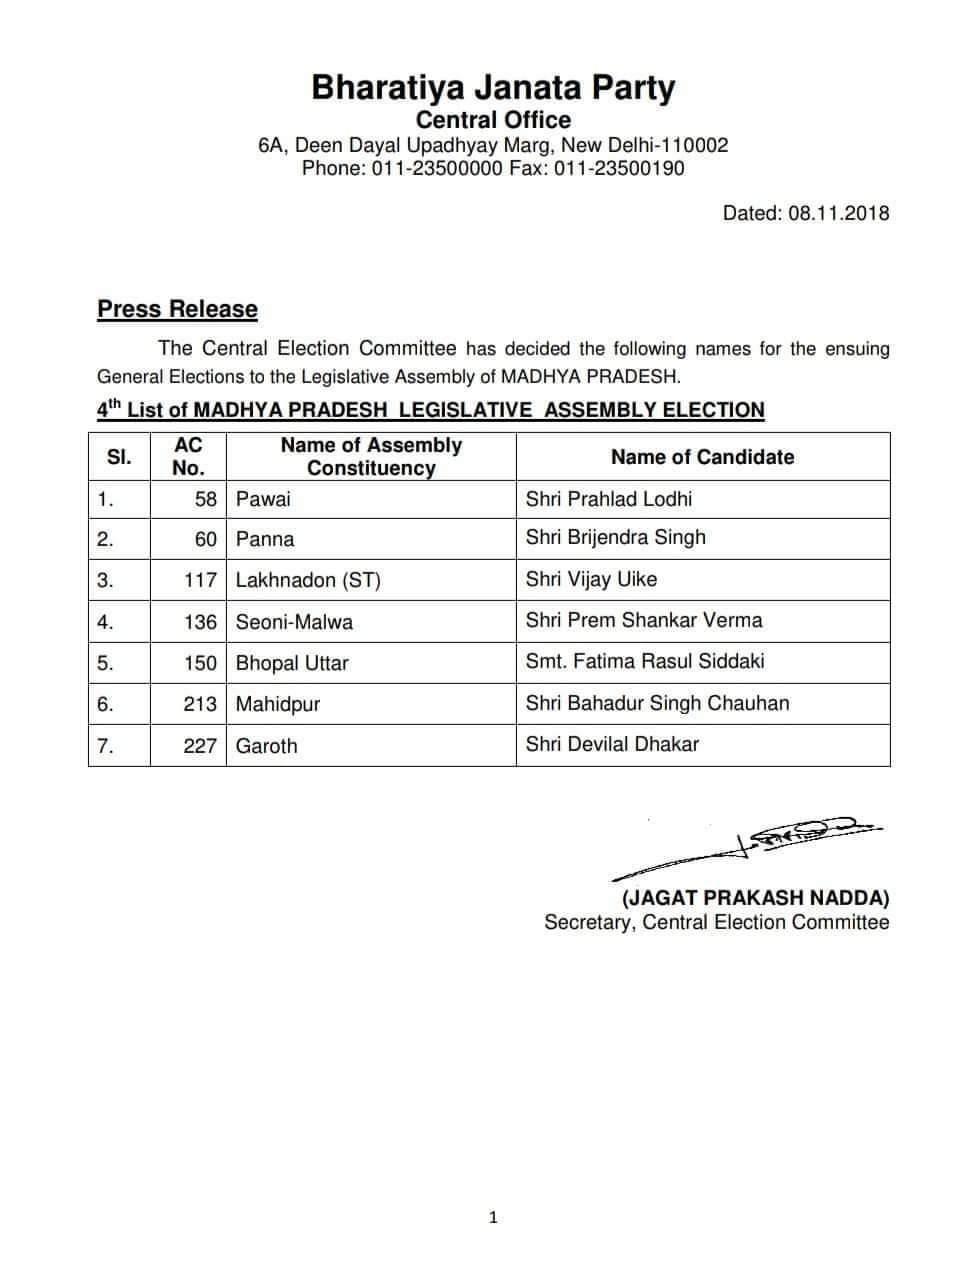 कांग्रेस व भाजपा ने 7- 7 उम्मीदवारों की जारी की सूची, मध्यप्रदेश के मुख्यमंत्री शिवराज सिंह चौहान के खिलाफ कांग्रेस ने अरूण यादव को उतारा मैदान में | New India Times